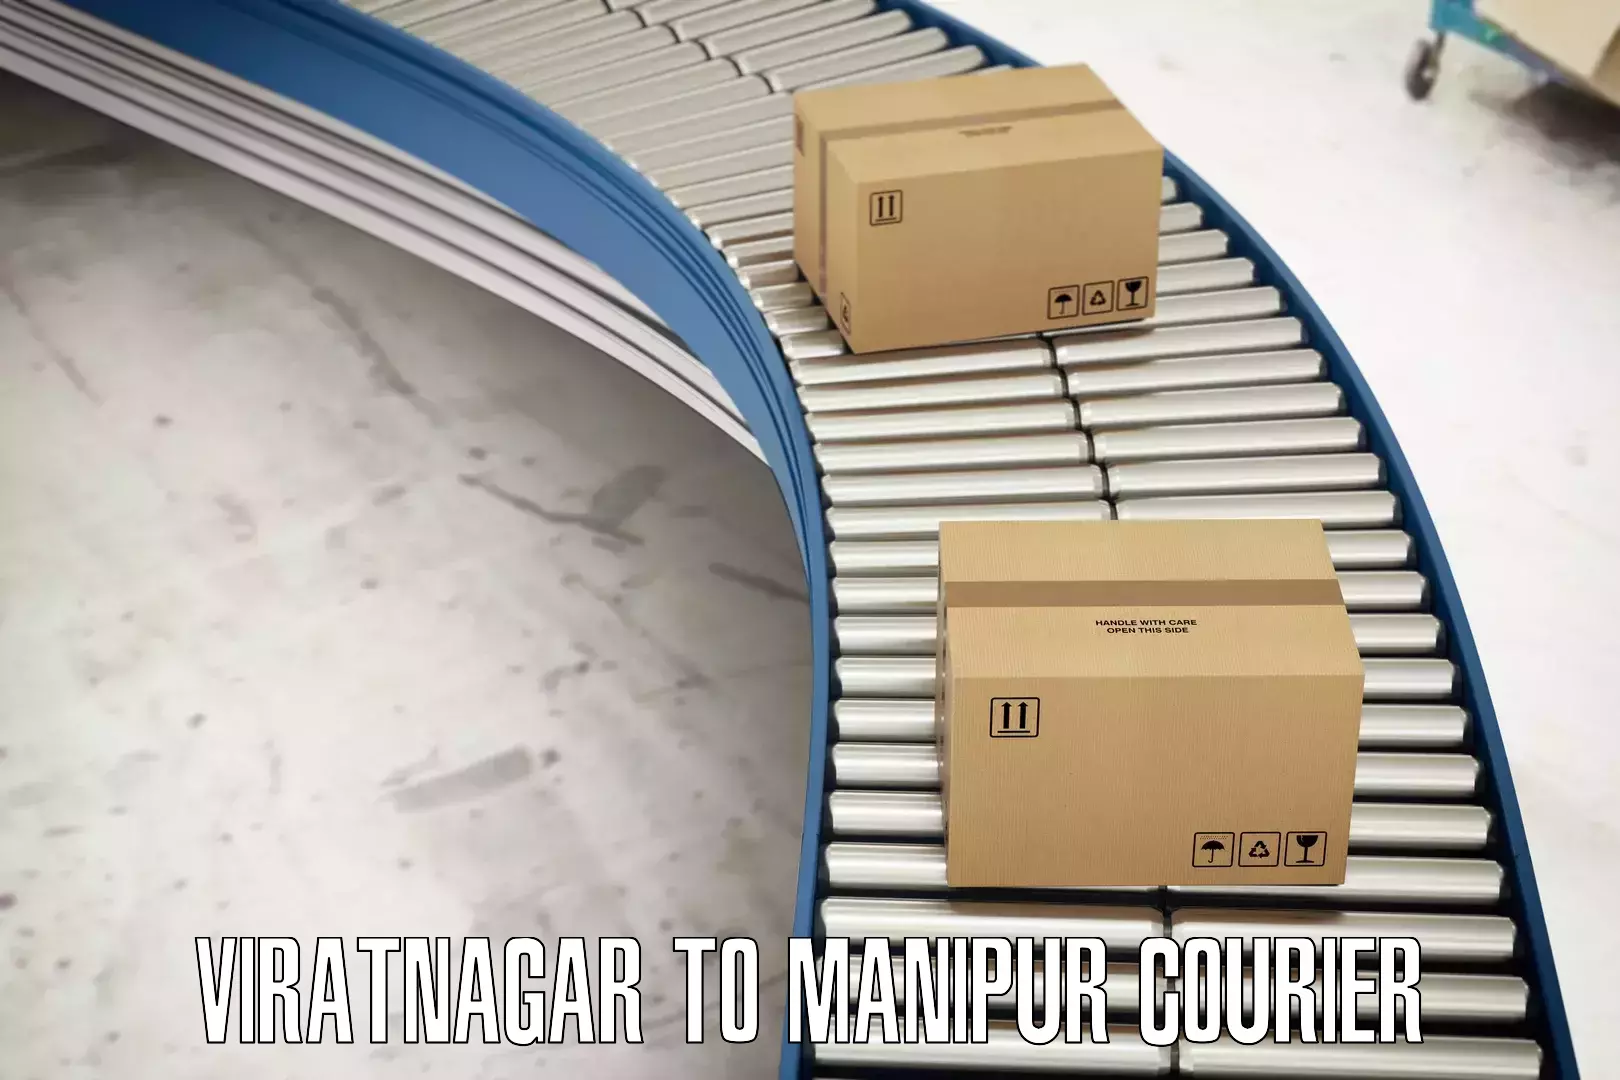 Corporate courier solutions Viratnagar to Moirang